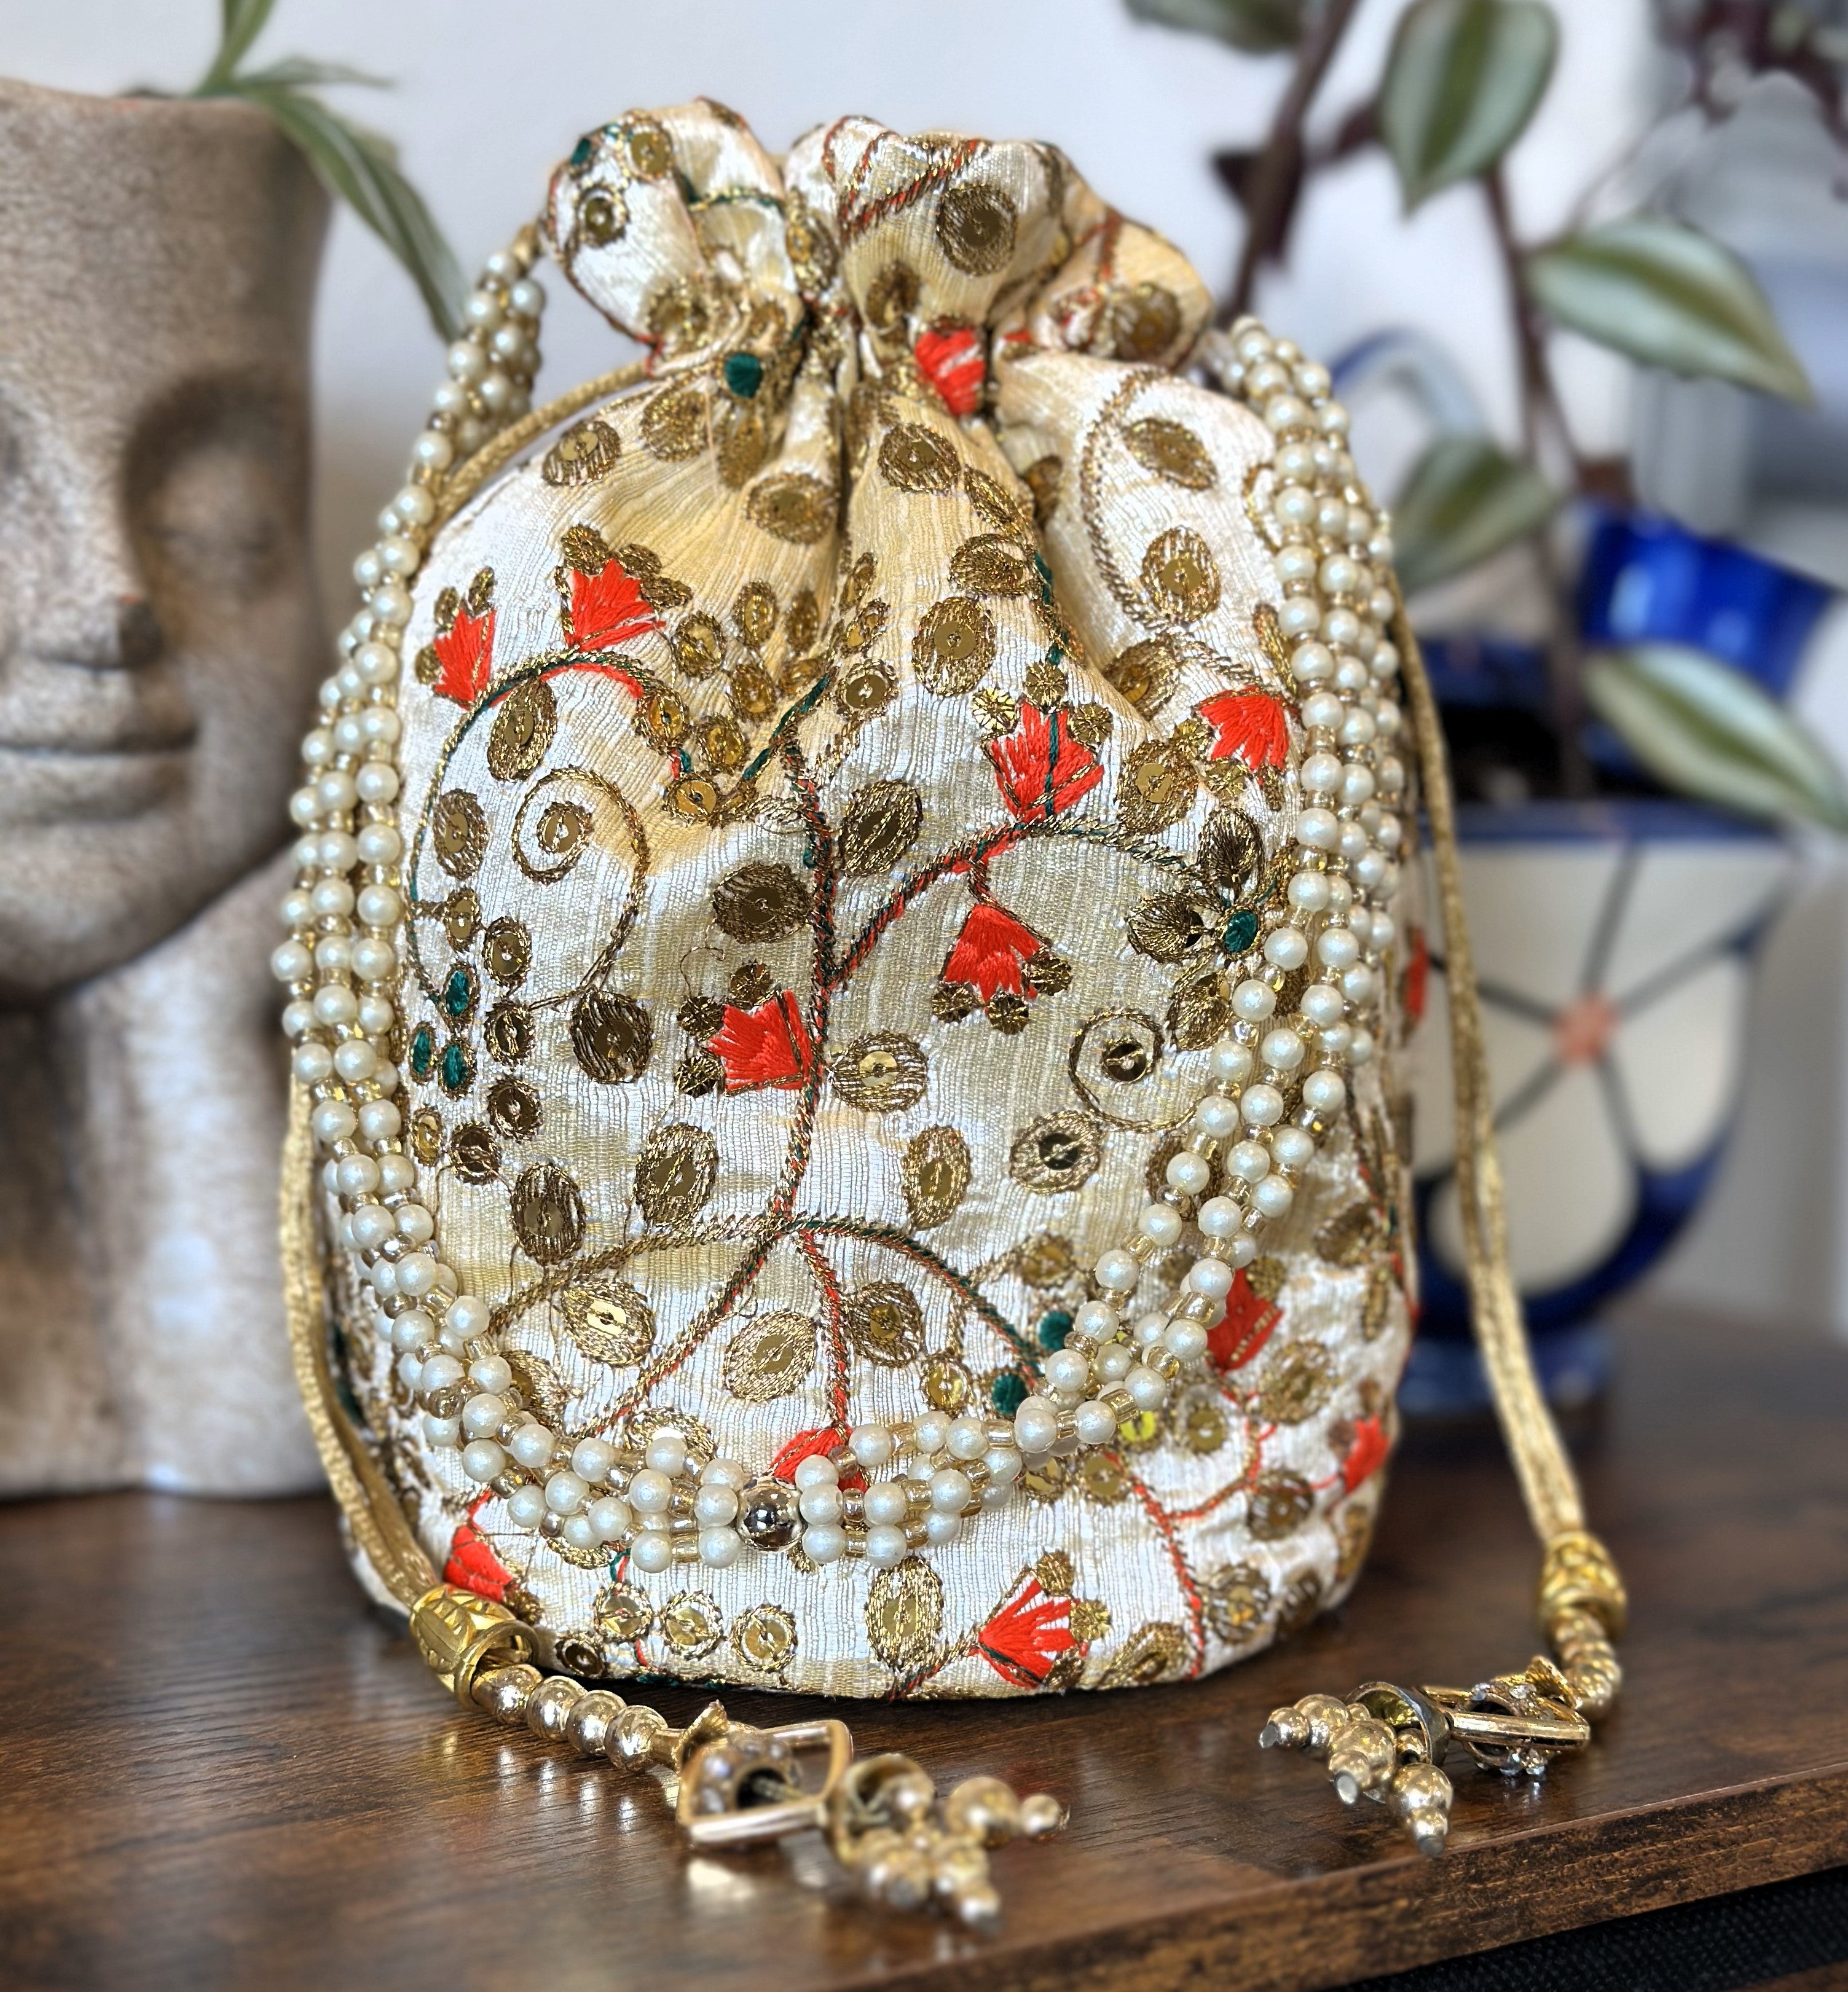 Buy KPH Rajasthani Traditional Silk Potli bag For Womans Wedding Potli Bag,  Ethnic Potli Wedding Potli Bag For Bridal, Return Gift Potli bags Pack Of 2  at Amazon.in